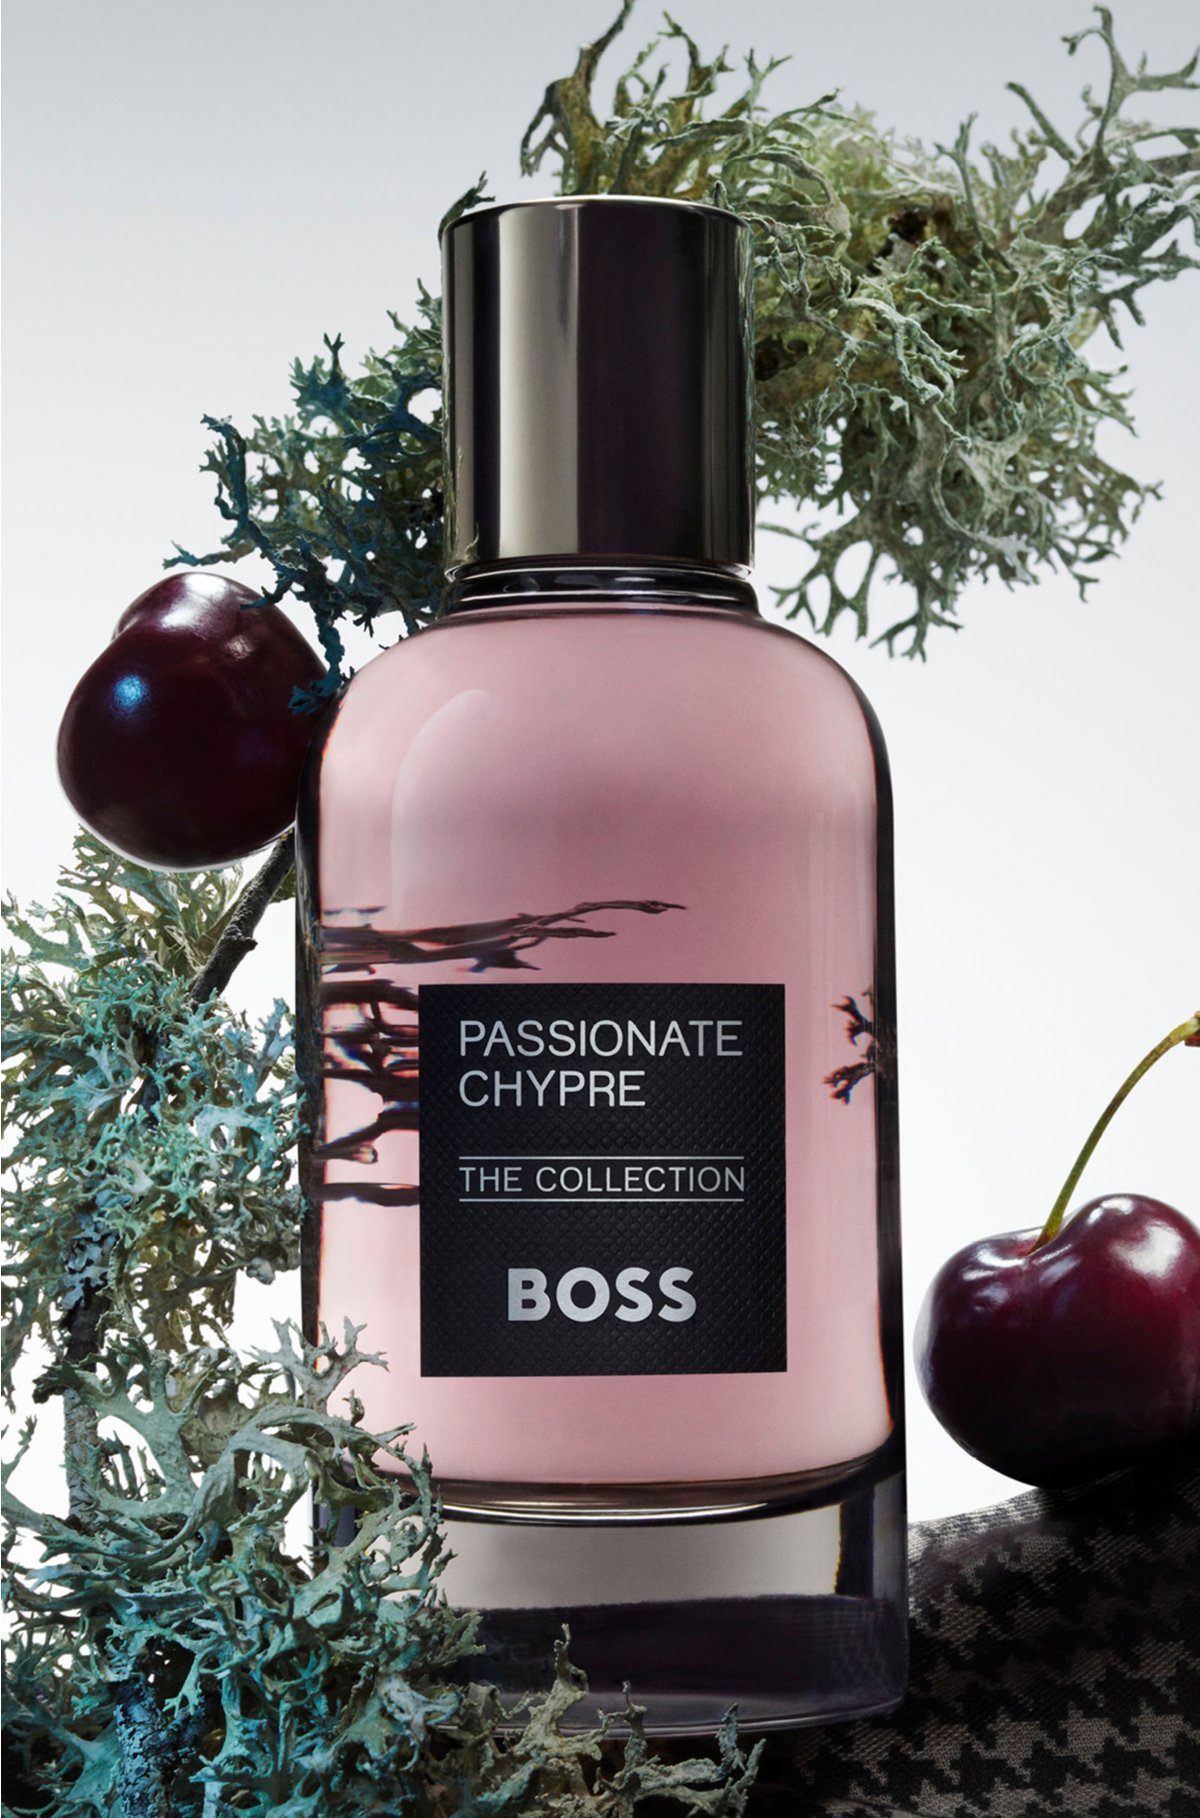 BOSS The Collection Passionate Chypre eau de parfum 100ml, Assorted-Pre-Pack